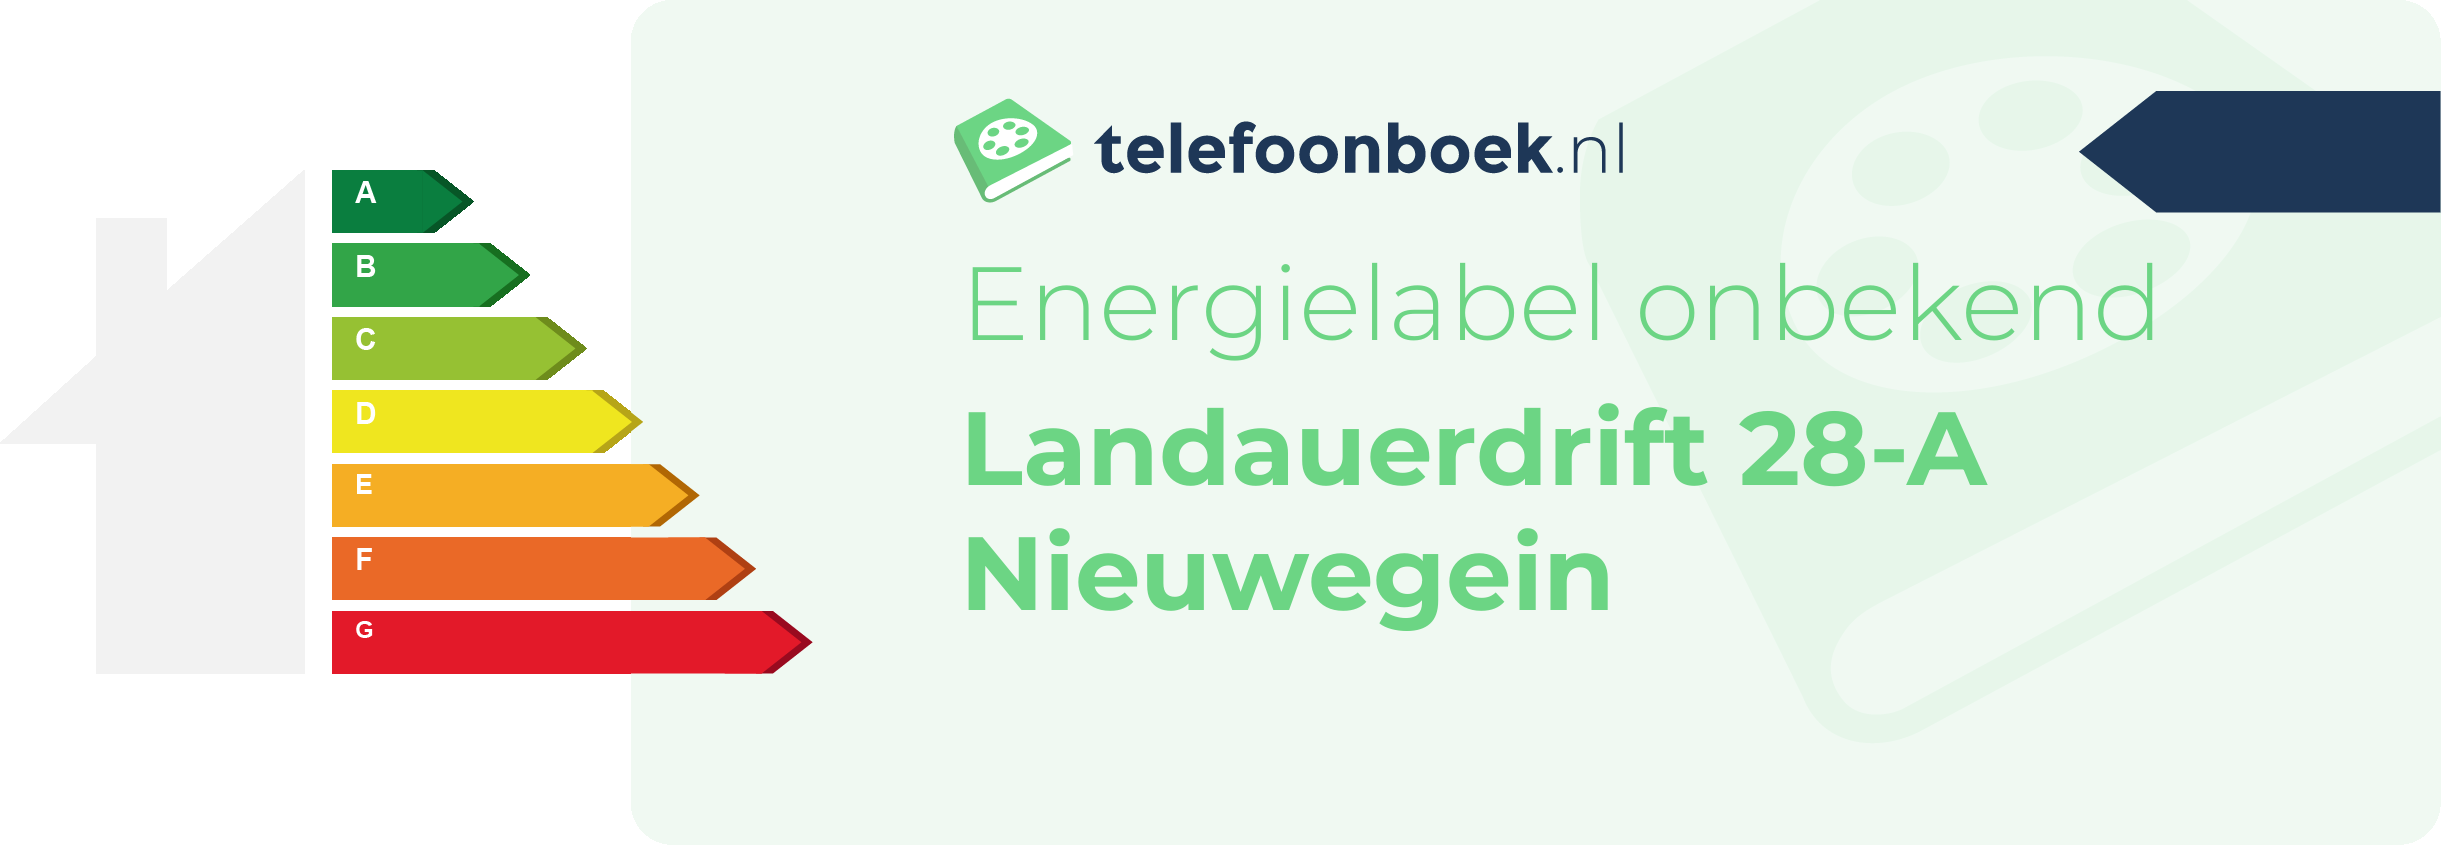 Energielabel Landauerdrift 28-A Nieuwegein